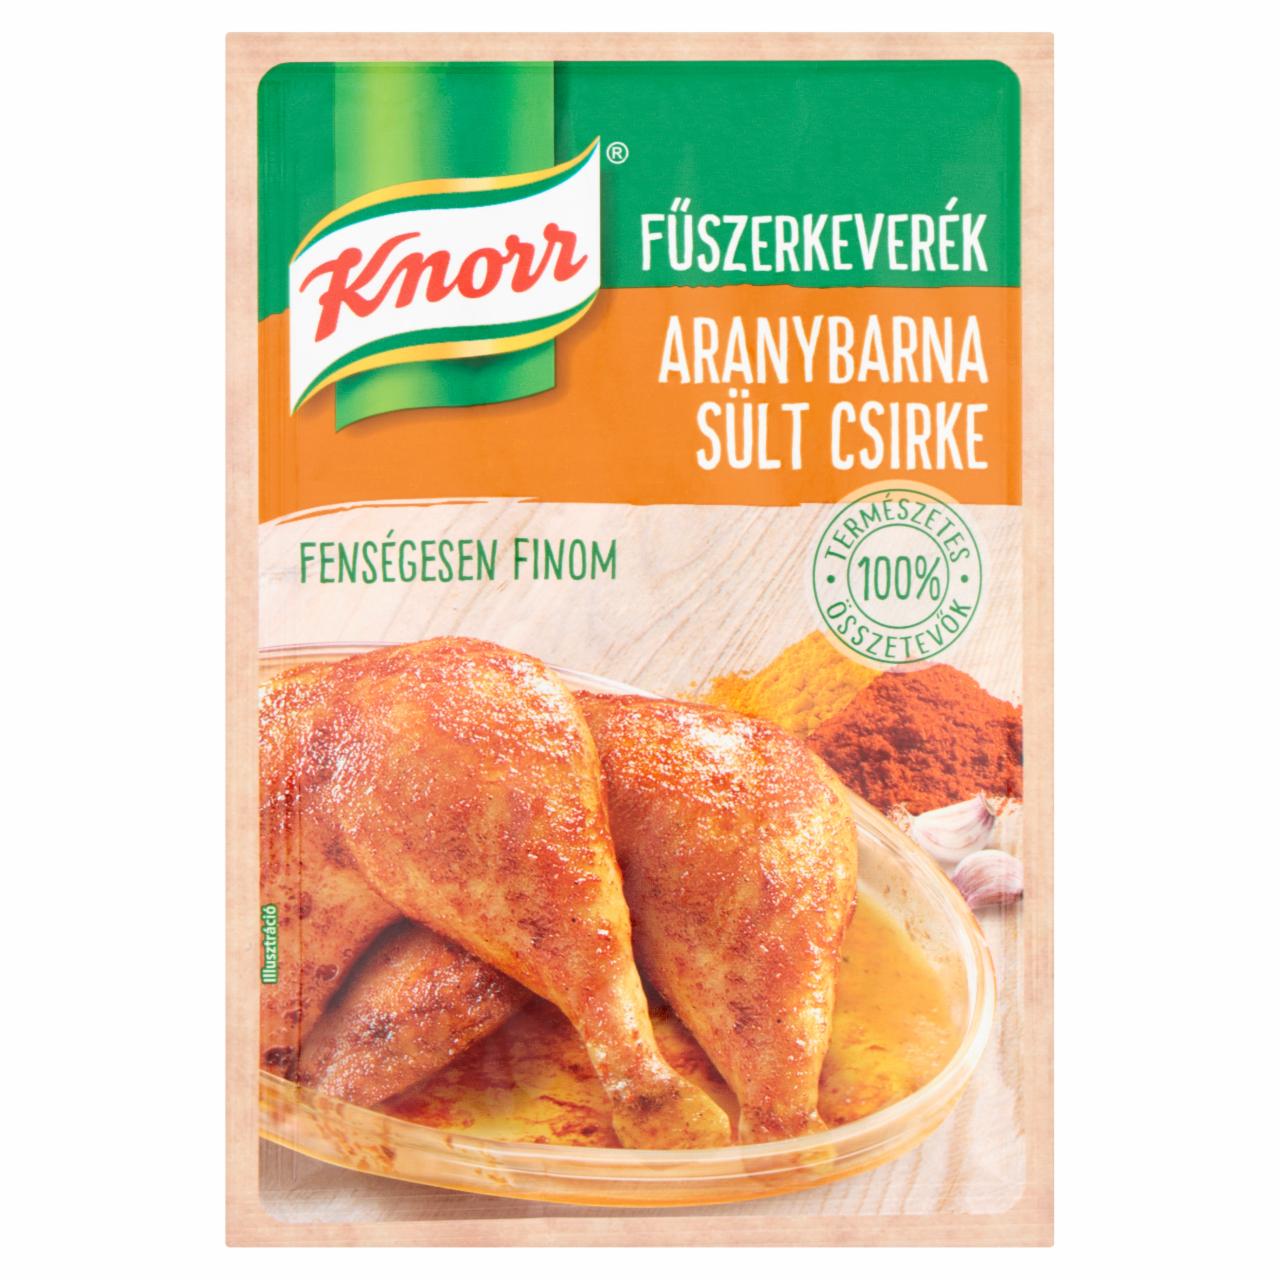 Képek - Knorr aranybarna sült csirke fűszerkeverék 35 g